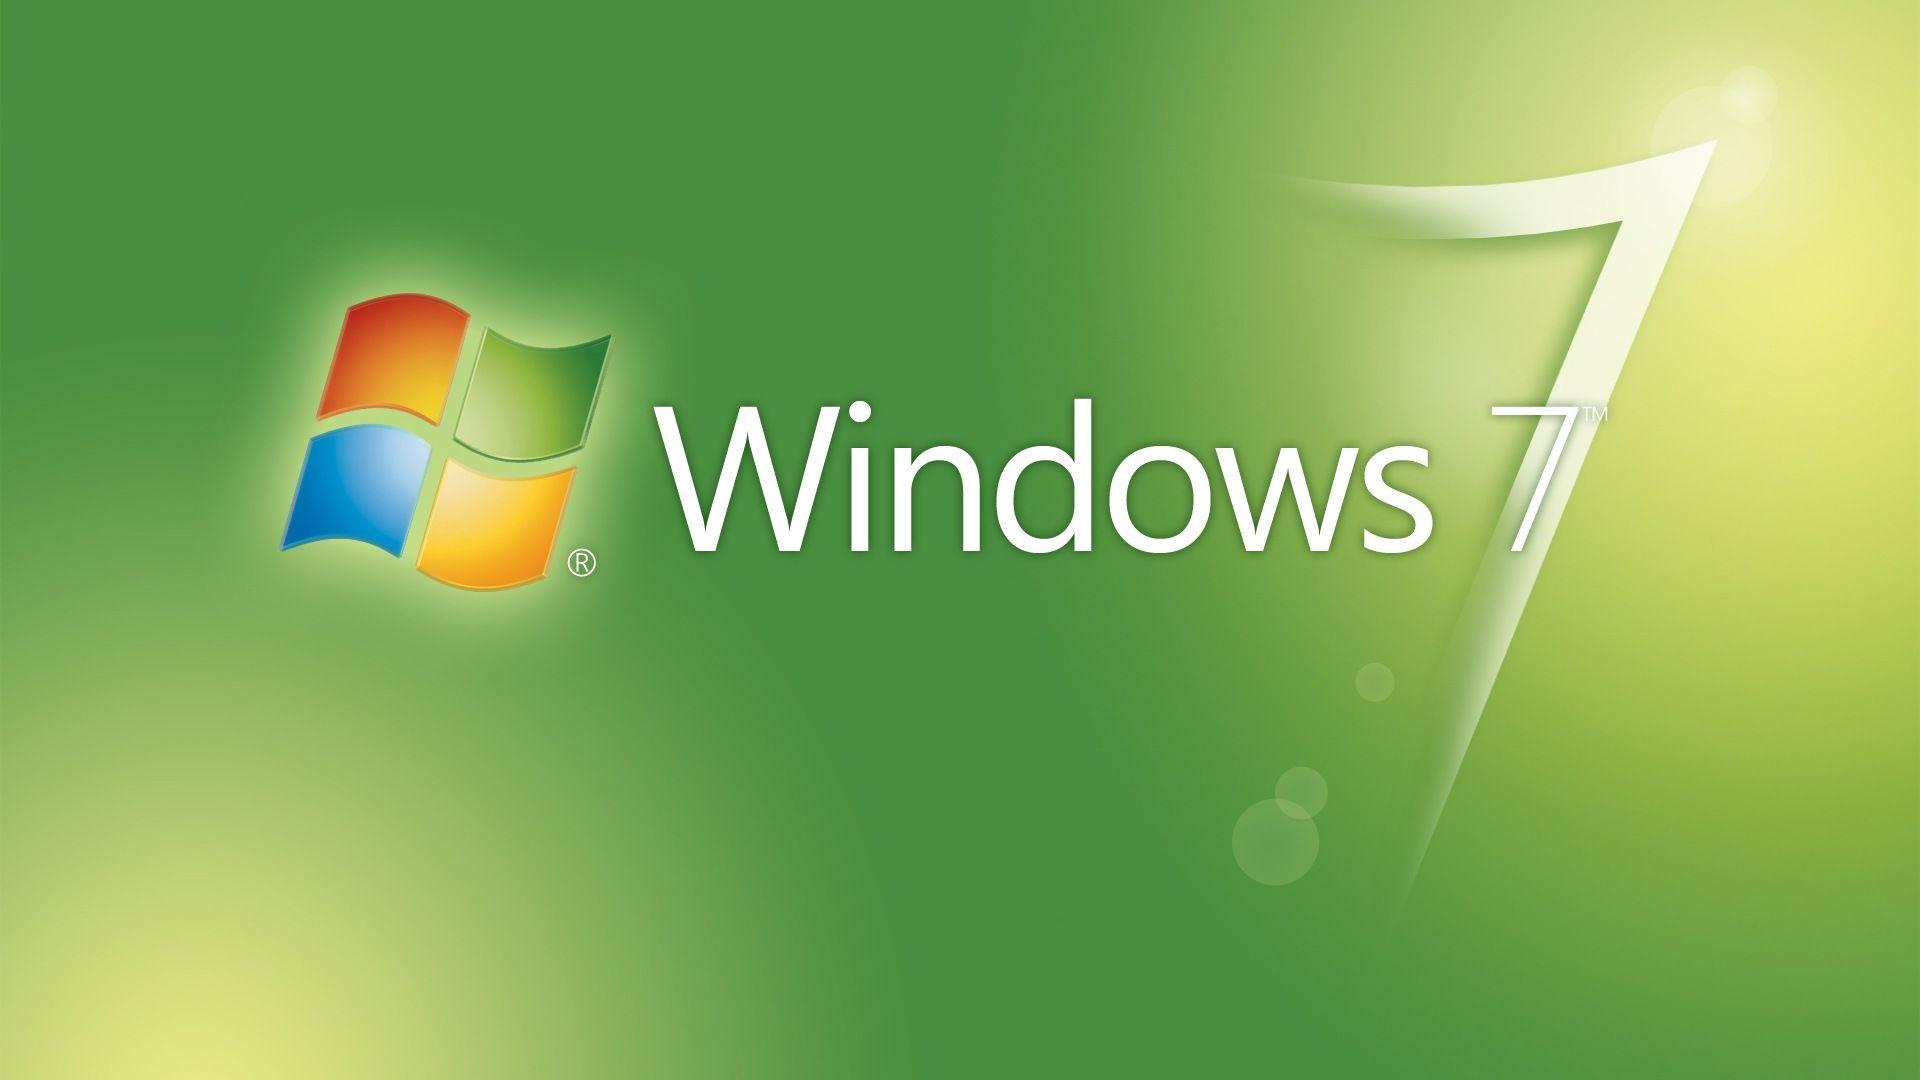 Logos For > Windows Logo Wallpaper 1920x1080